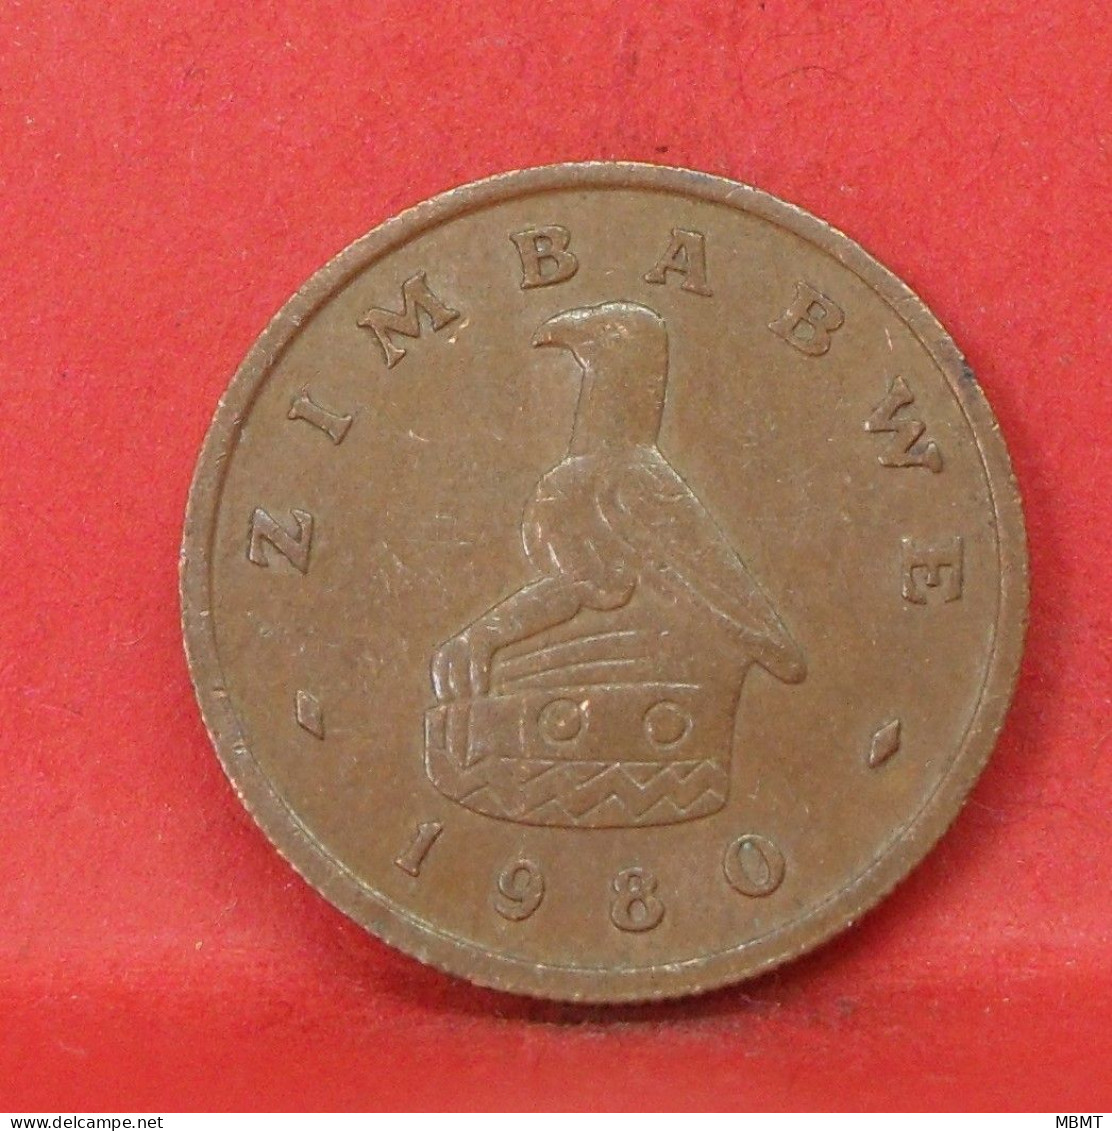 1 Cent 1980 - TB - Pièce De Monnaie Zimbabwe - Article N°6241 - Zimbabwe